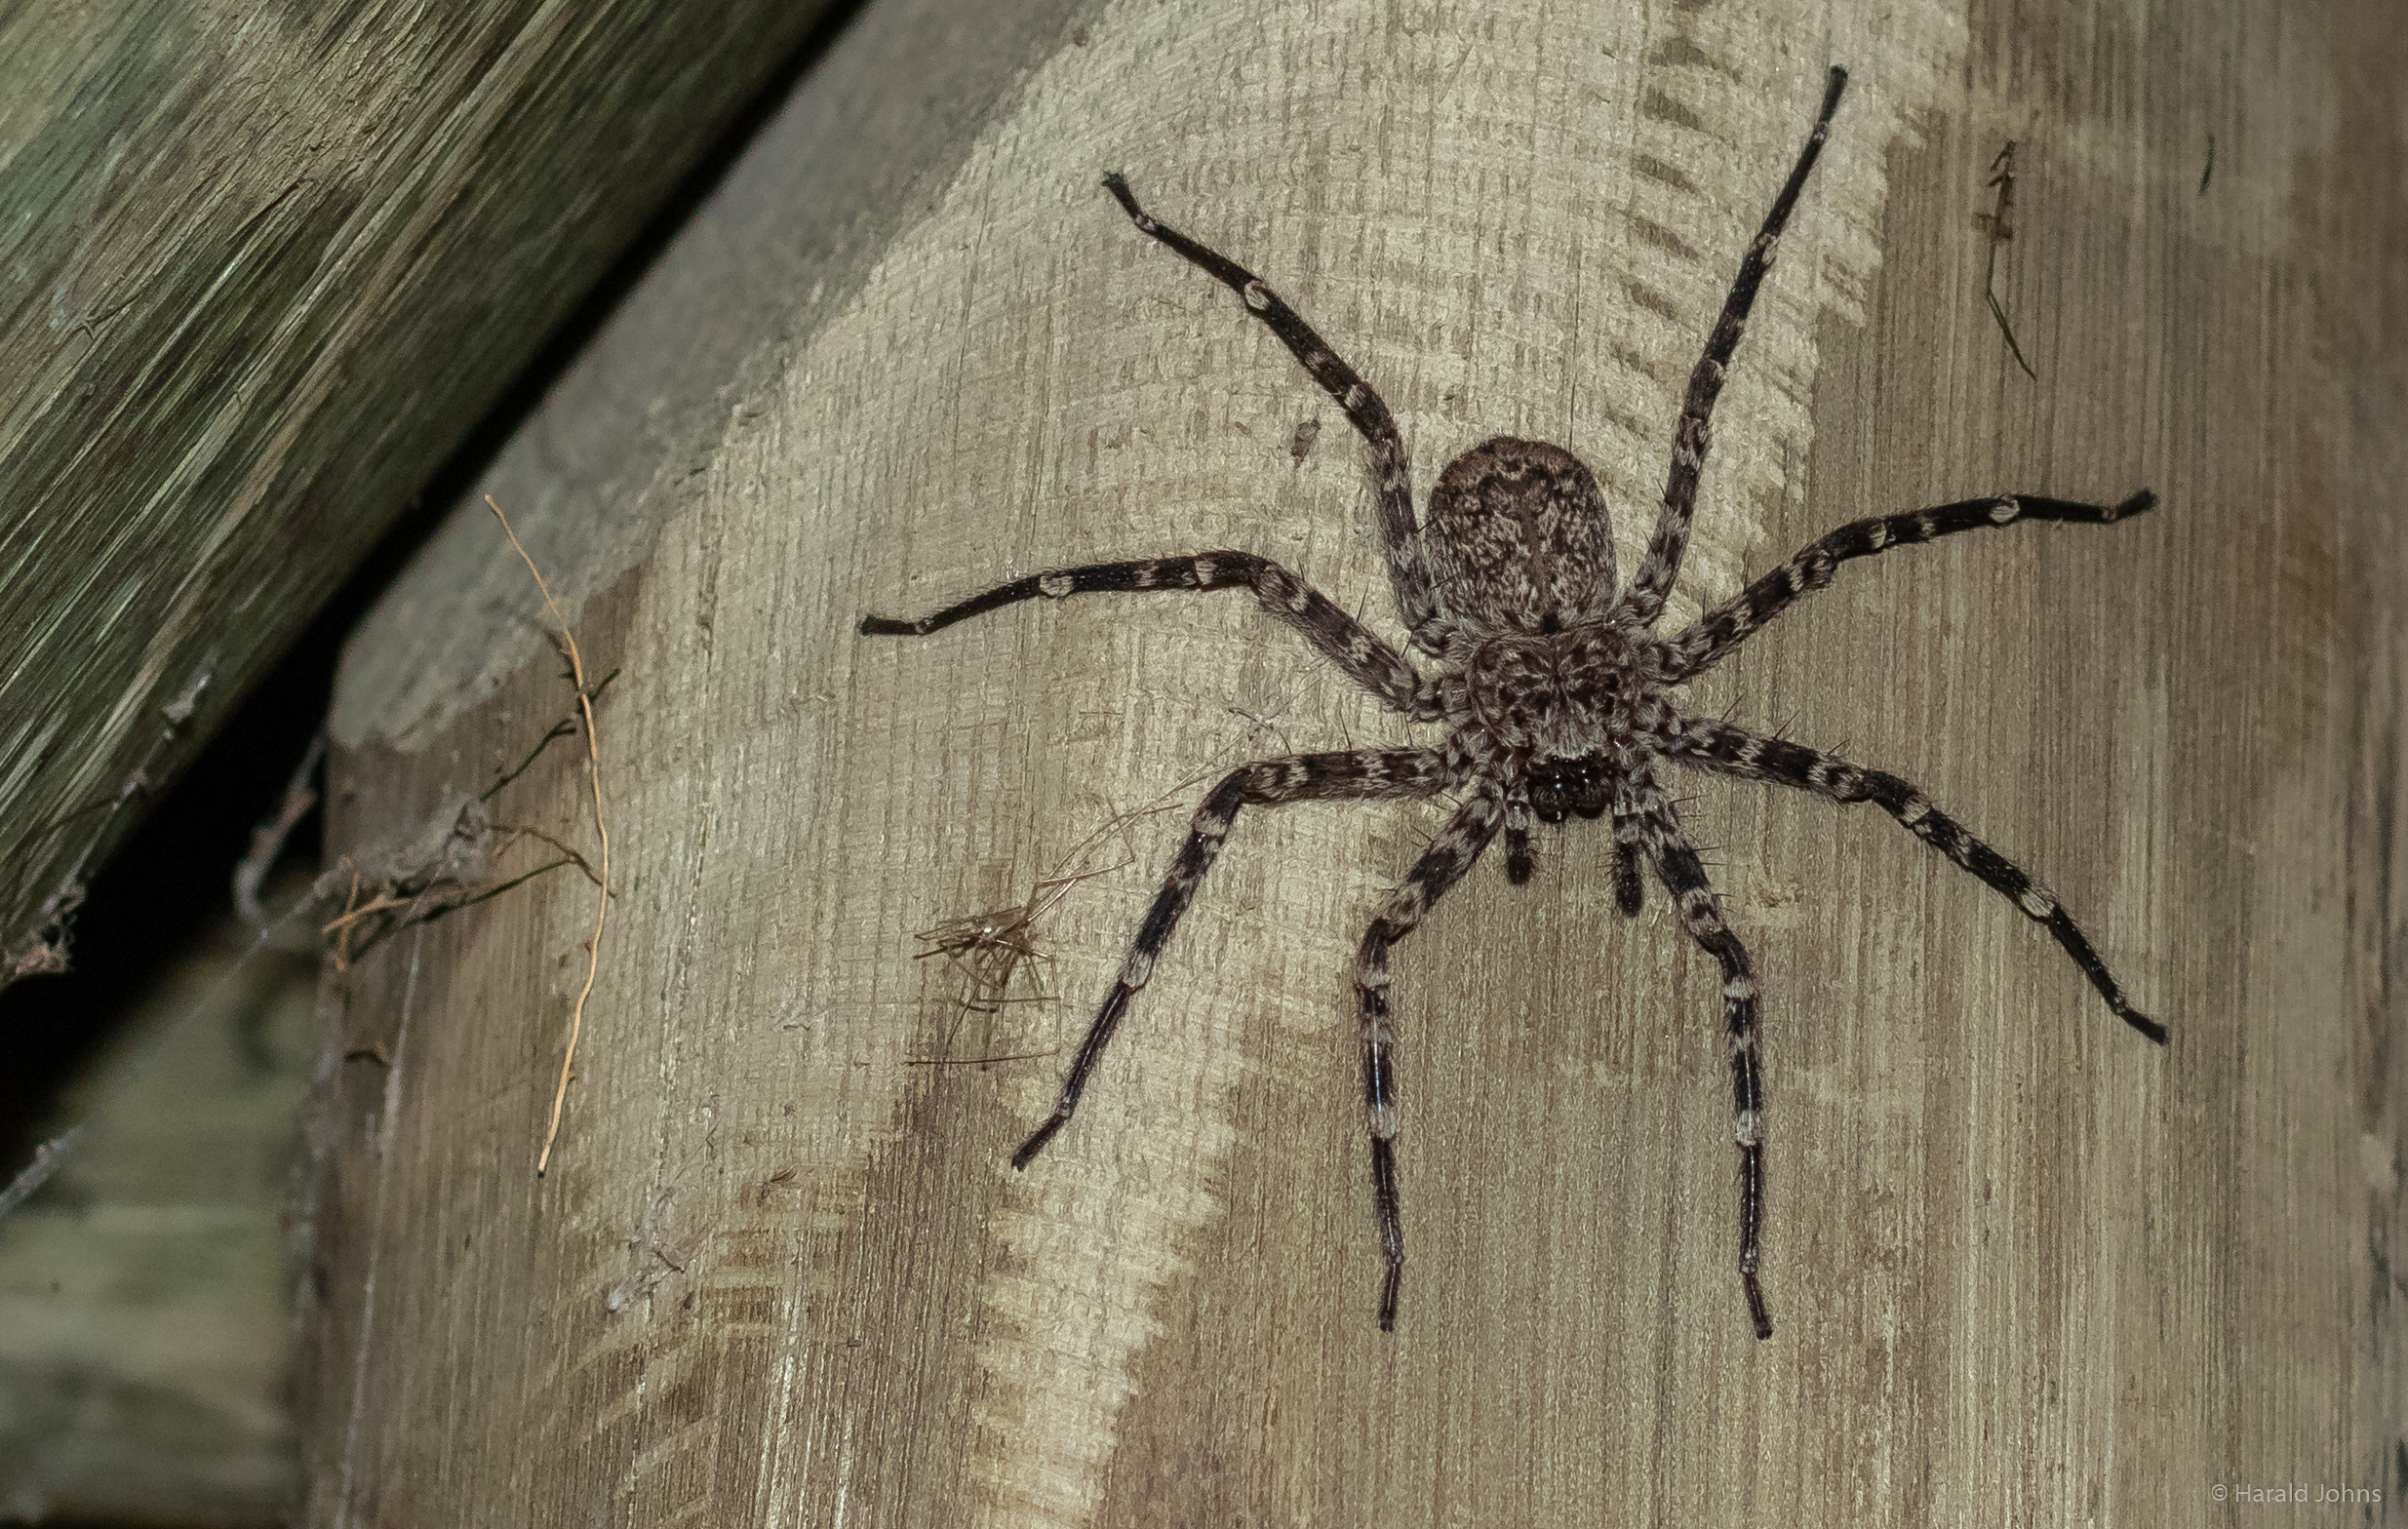 ineressanter Besuch in der Lodge, Tarantel? Wohl eine Selenops-Spinne.